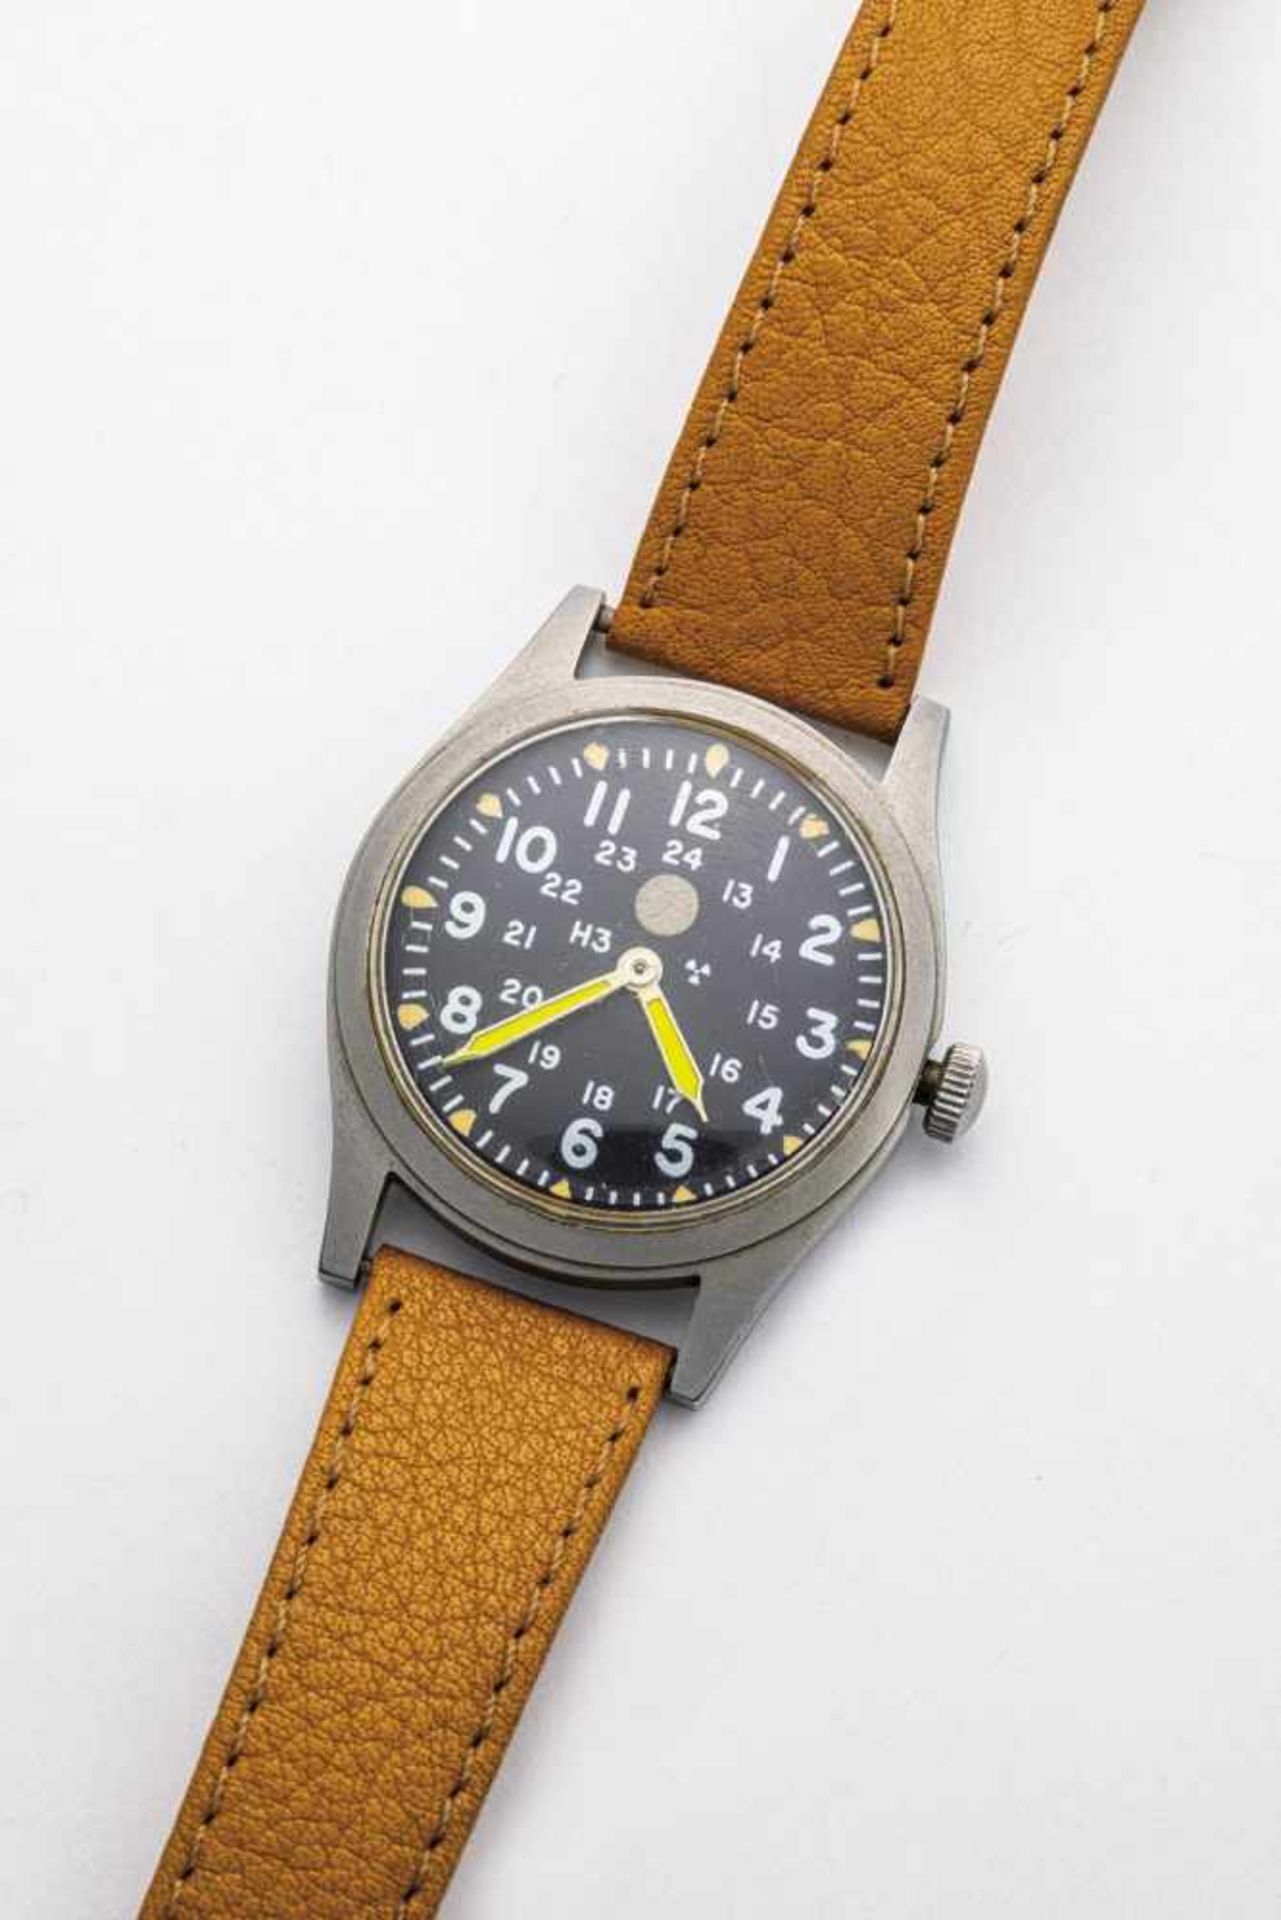 Armbanduhr für das US MilitärHamilton H3, 1981 Rundes Stahlgehäuse mit verschraubtem Boden.